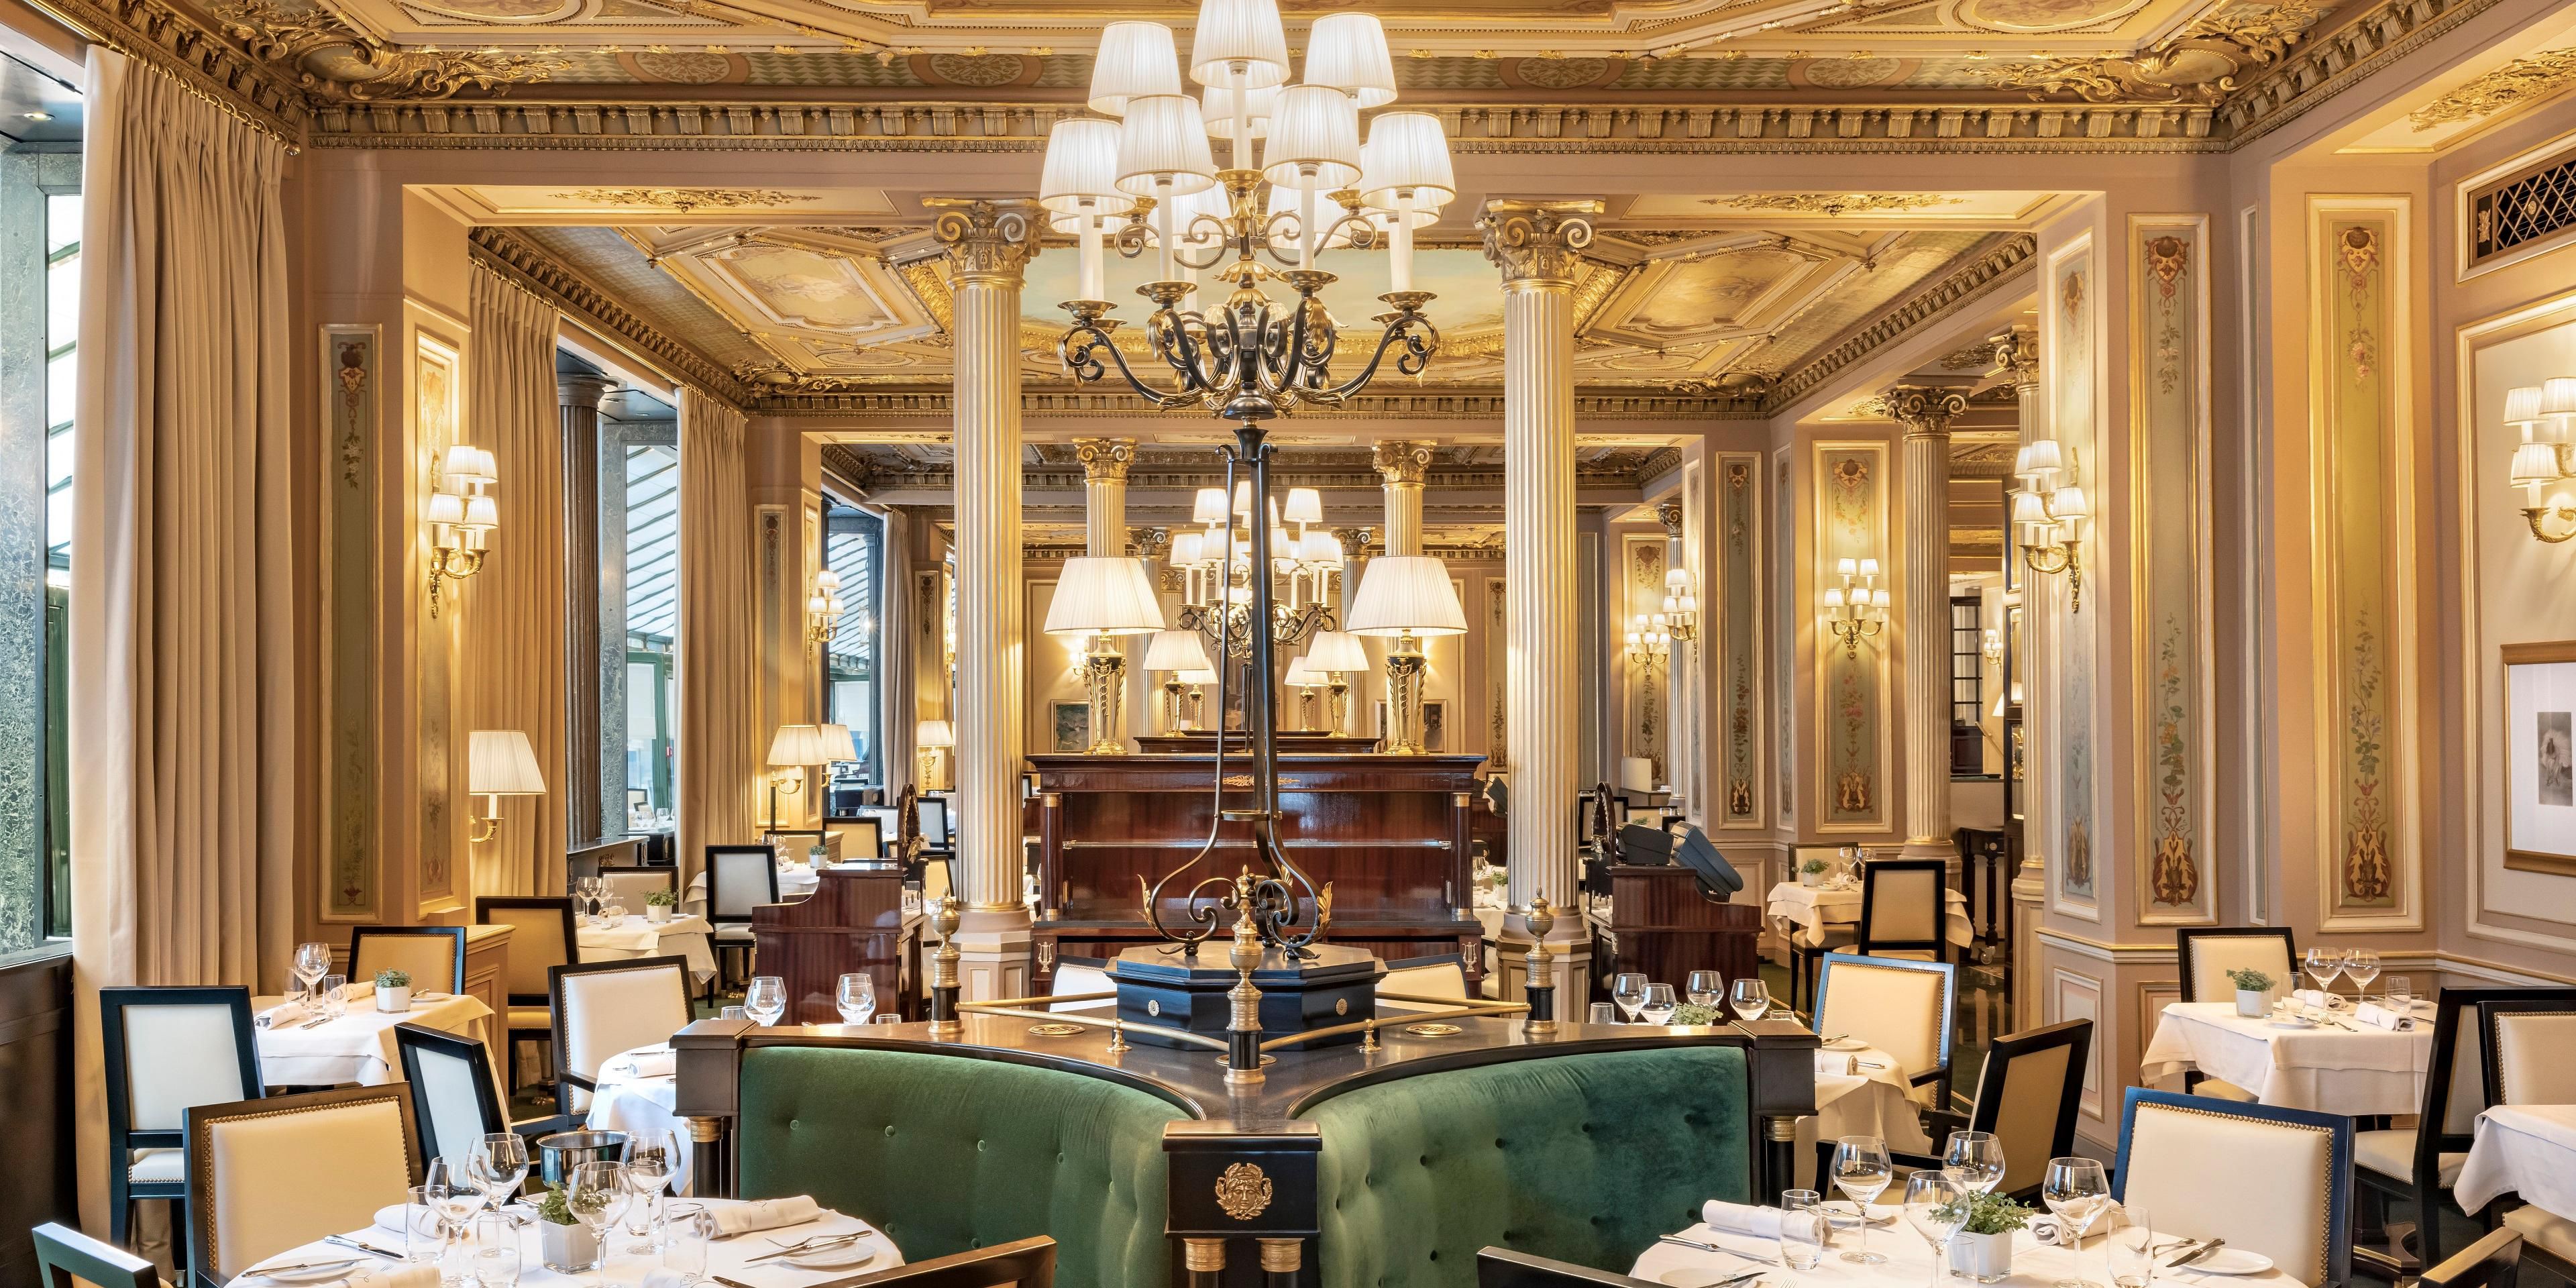 Temukan latar bersejarah Café de la Paix, sebuah legenda kehidupan Paris sejak 1862.
Chef Laurent André menawarkan masakan klasik Prancis untuk momen luar biasa menghadap Opera Garnier.